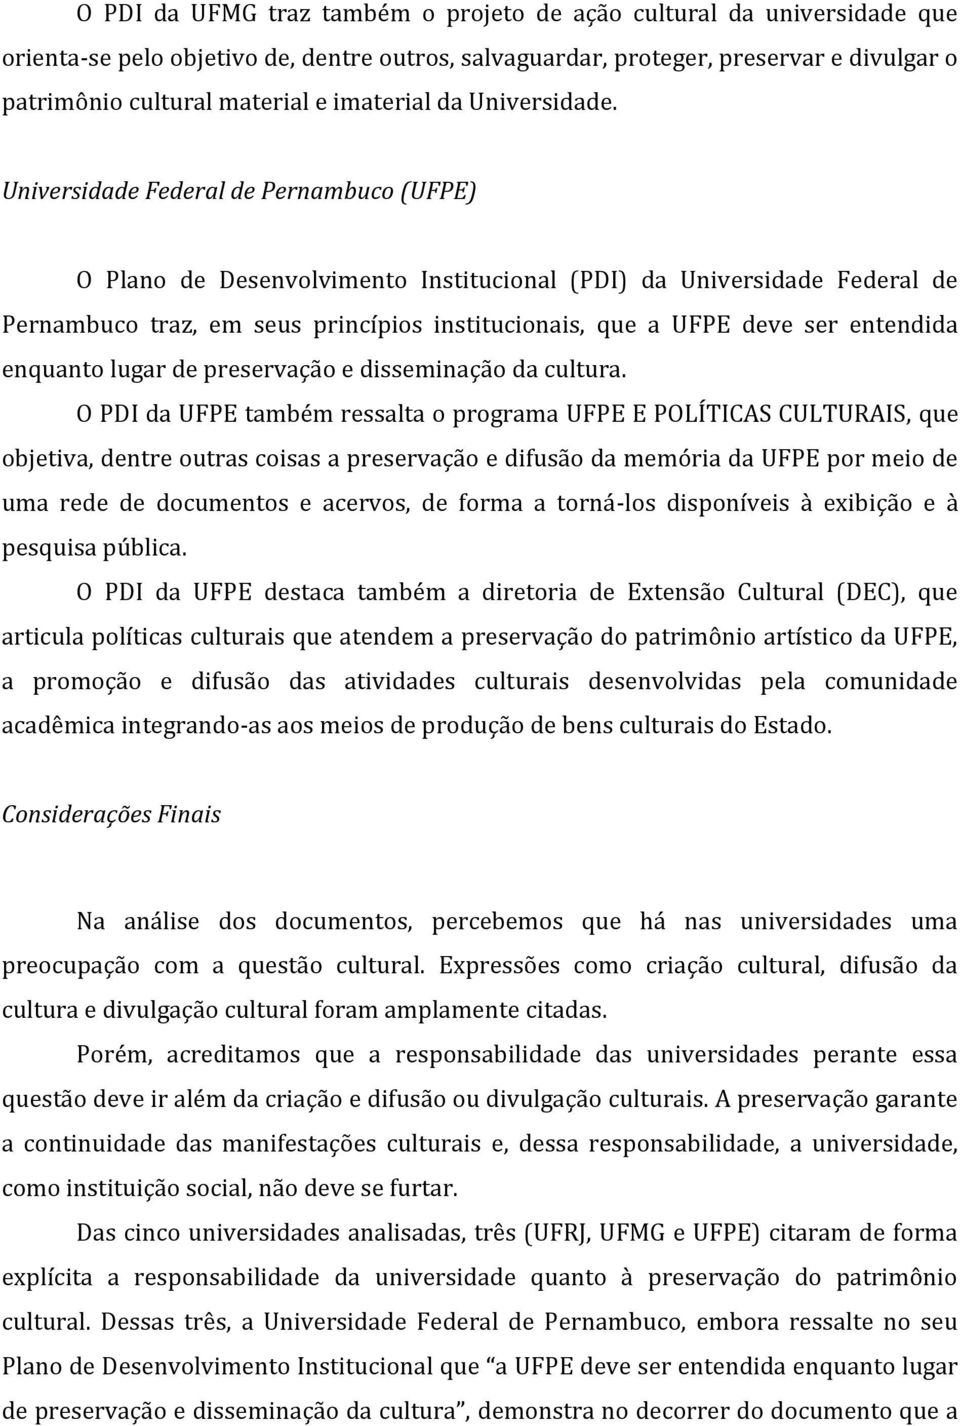 Universidade Federal de Pernambuco (UFPE) O Plano de Desenvolvimento Institucional (PDI) da Universidade Federal de Pernambuco traz, em seus princípios institucionais, que a UFPE deve ser entendida